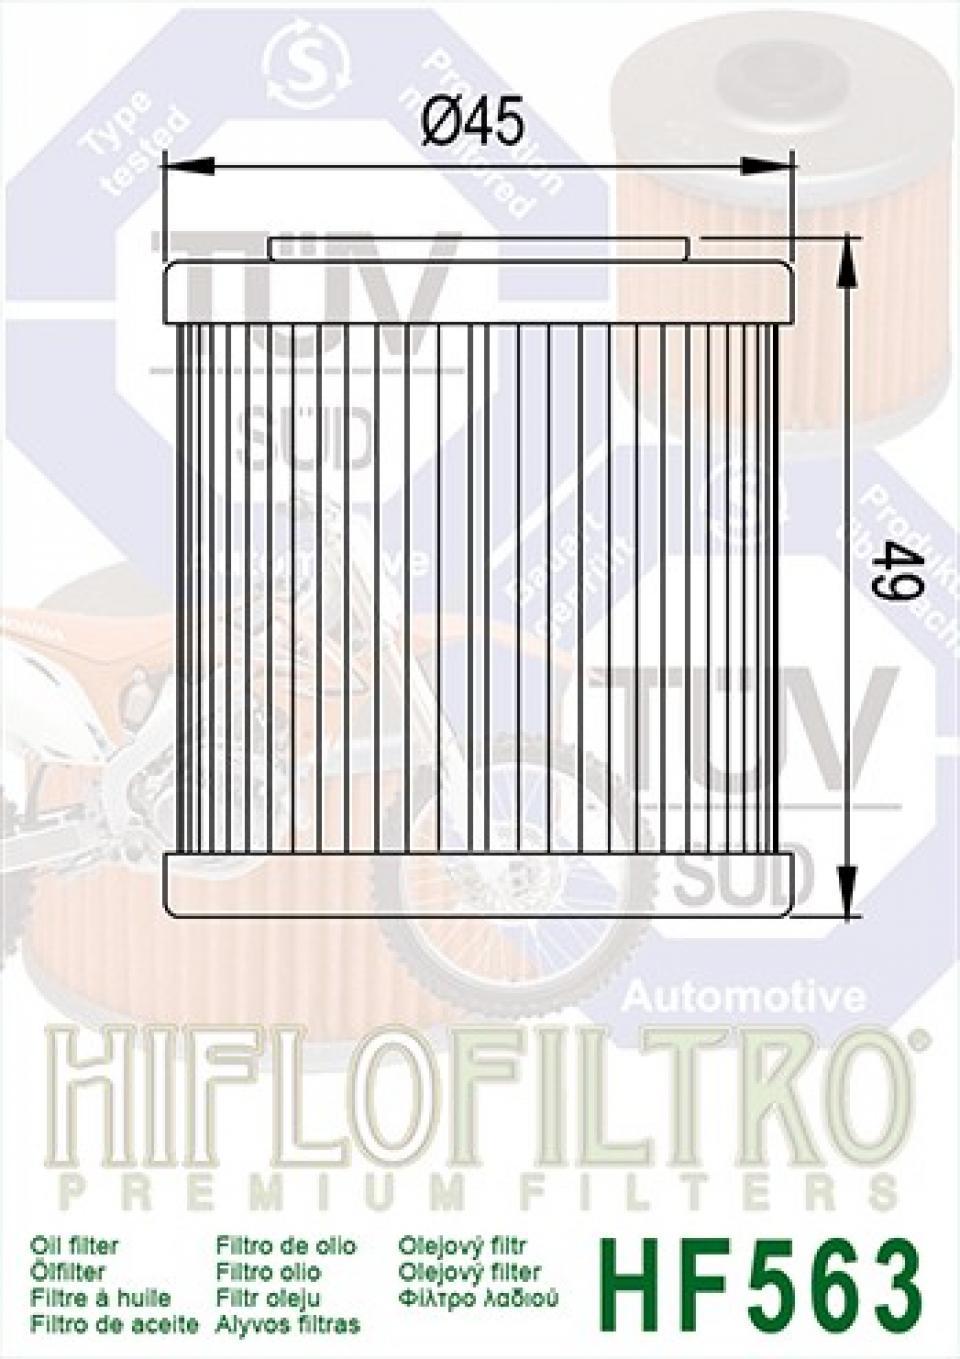 Filtre à huile Hiflo Filtro pour Moto Husqvarna 450 TC 4T 2008 à 2010 HF563 8000B0593